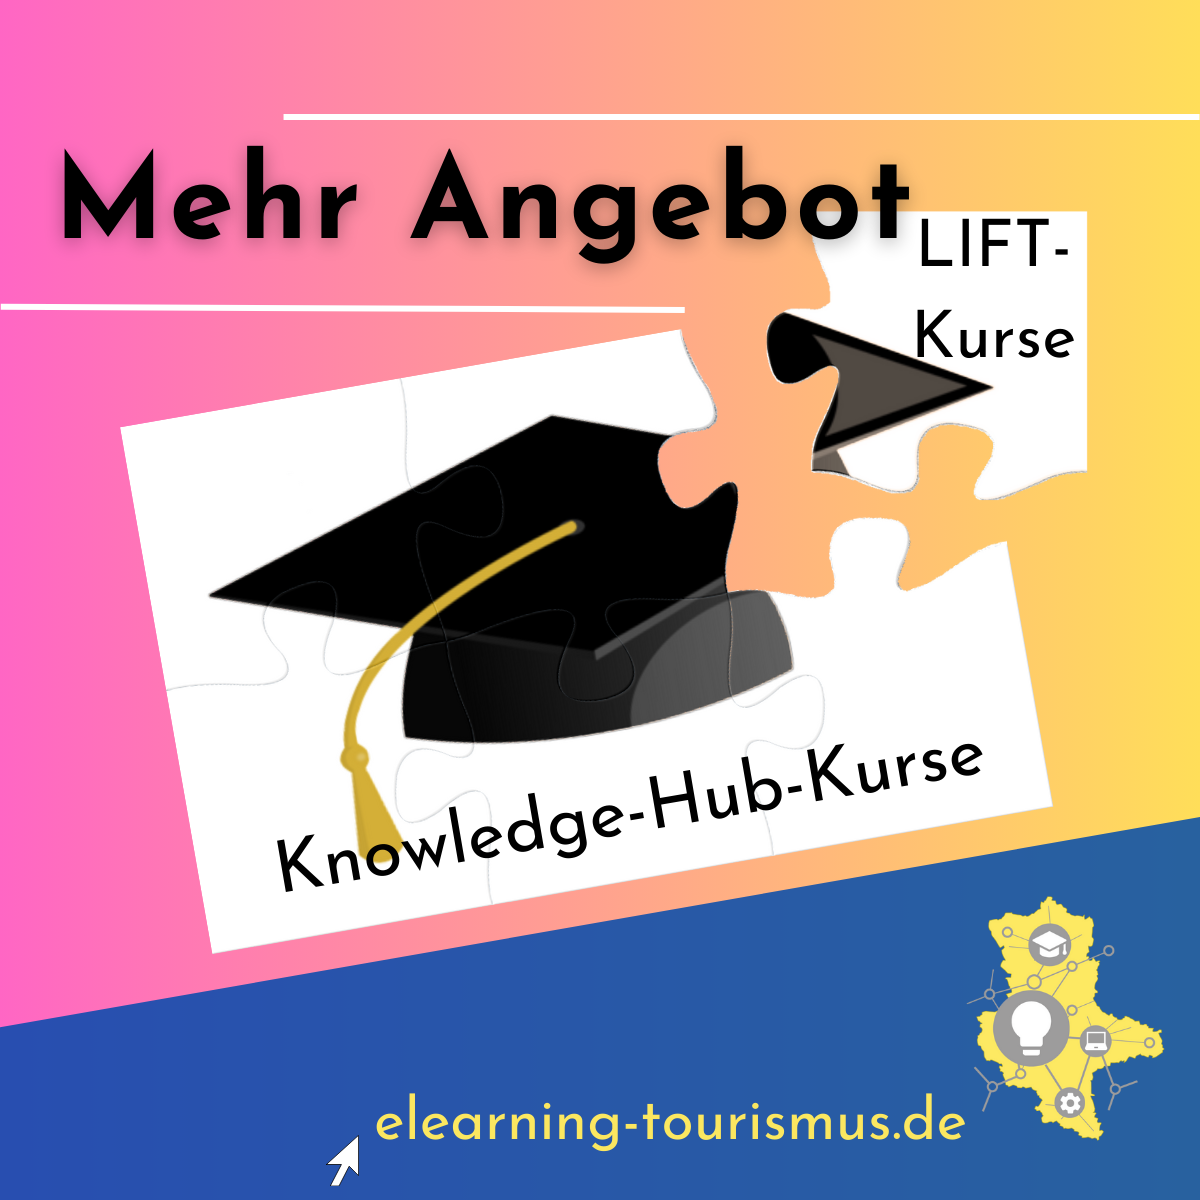 Der Knowledge-Hub der E-Learning-Plattform wird um die LIFT-Kurse erweitert. Beide Bestandteile sind als Puzzle dargestellt.